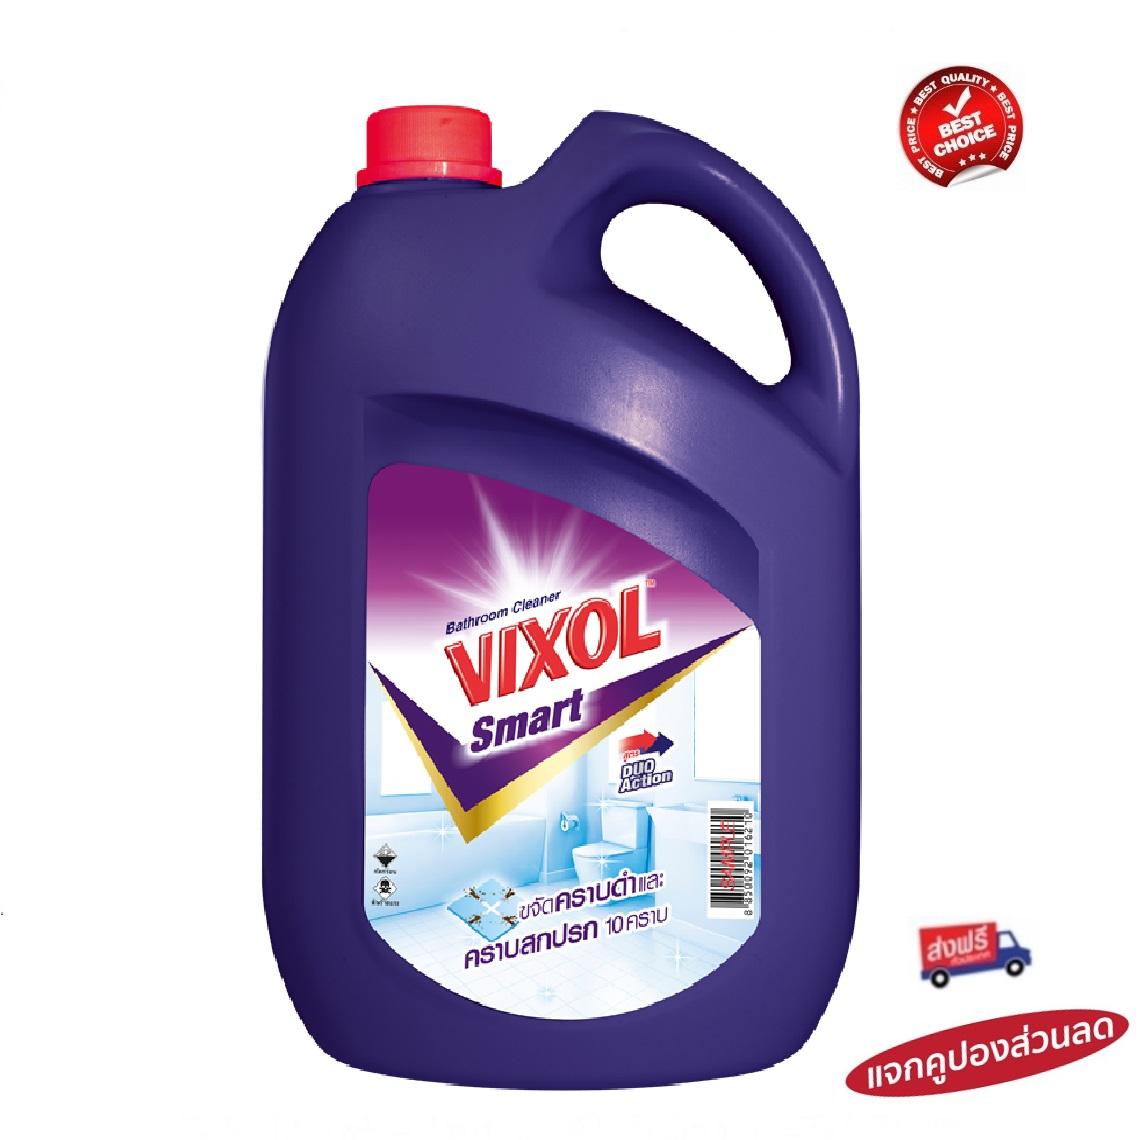 (ส่งฟรี) VIXOL ขนาด3500 มล. วิกซอล น้ำยาล้างห้องน้ำ สำหรับคราบติดแน่น Smart สีน้ำเงิน